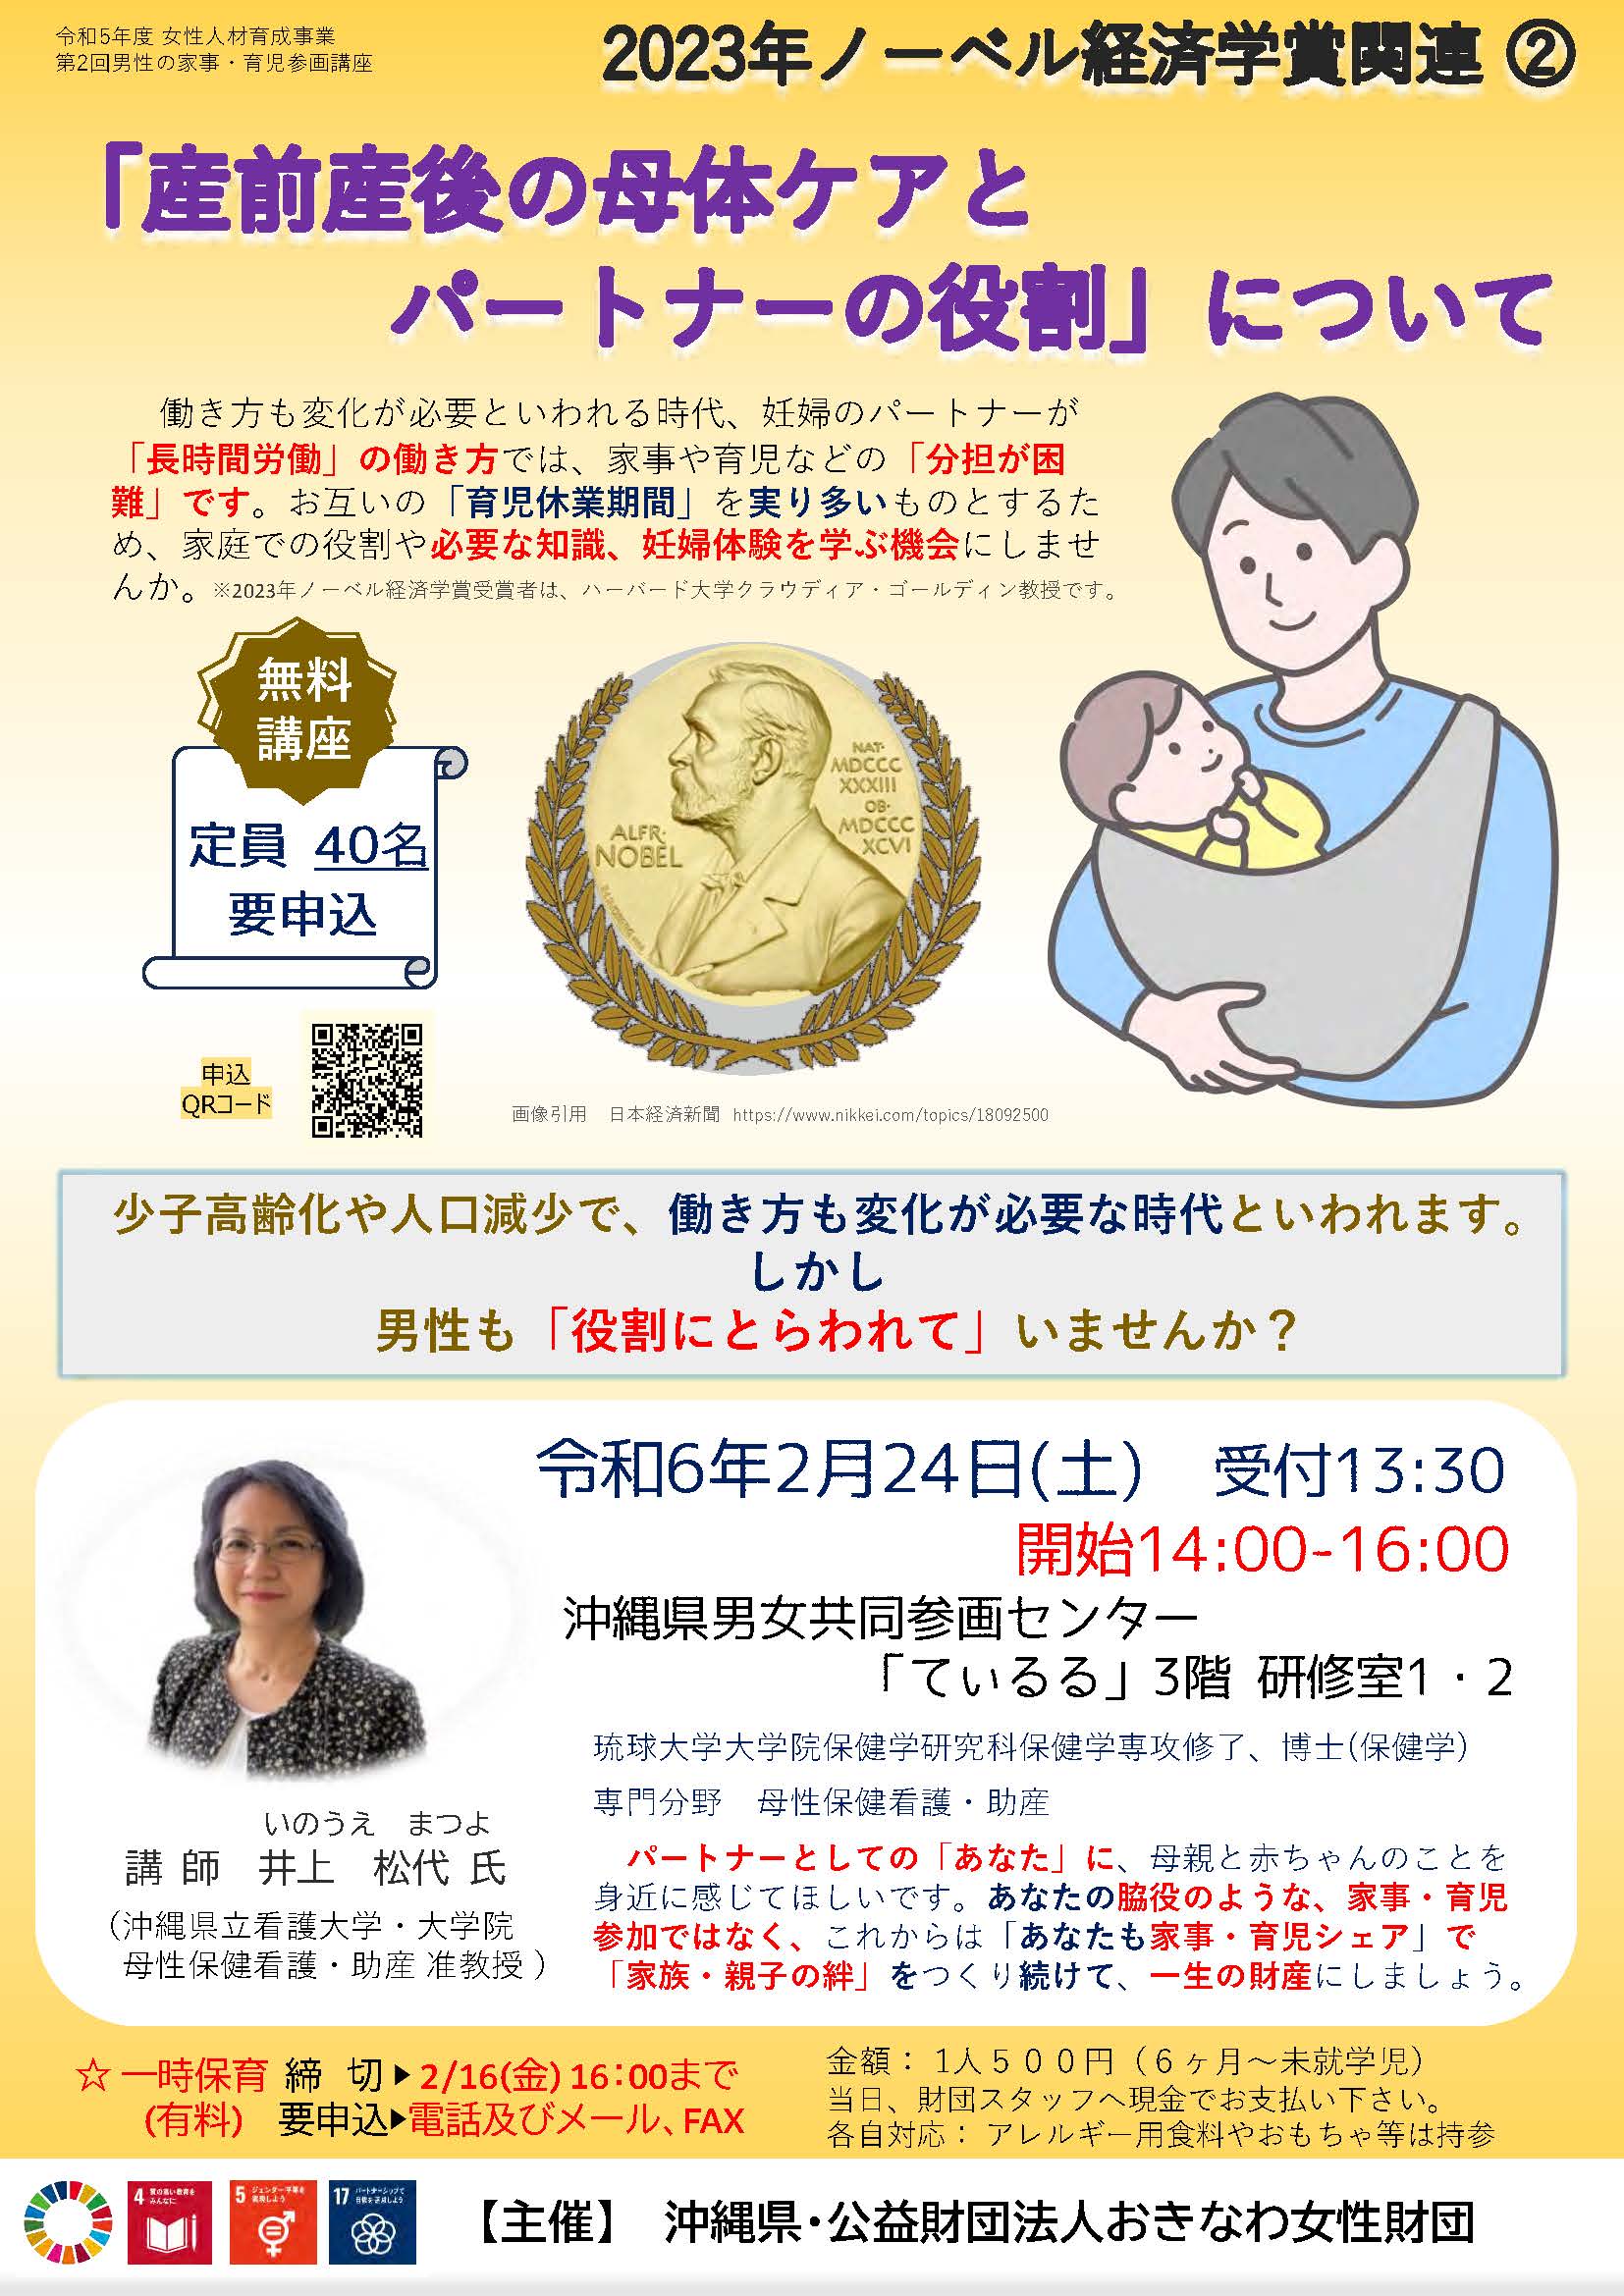 第2回男性の家事・育児参画講座「『産前産後の母体ケアとパートナーの役割』について」